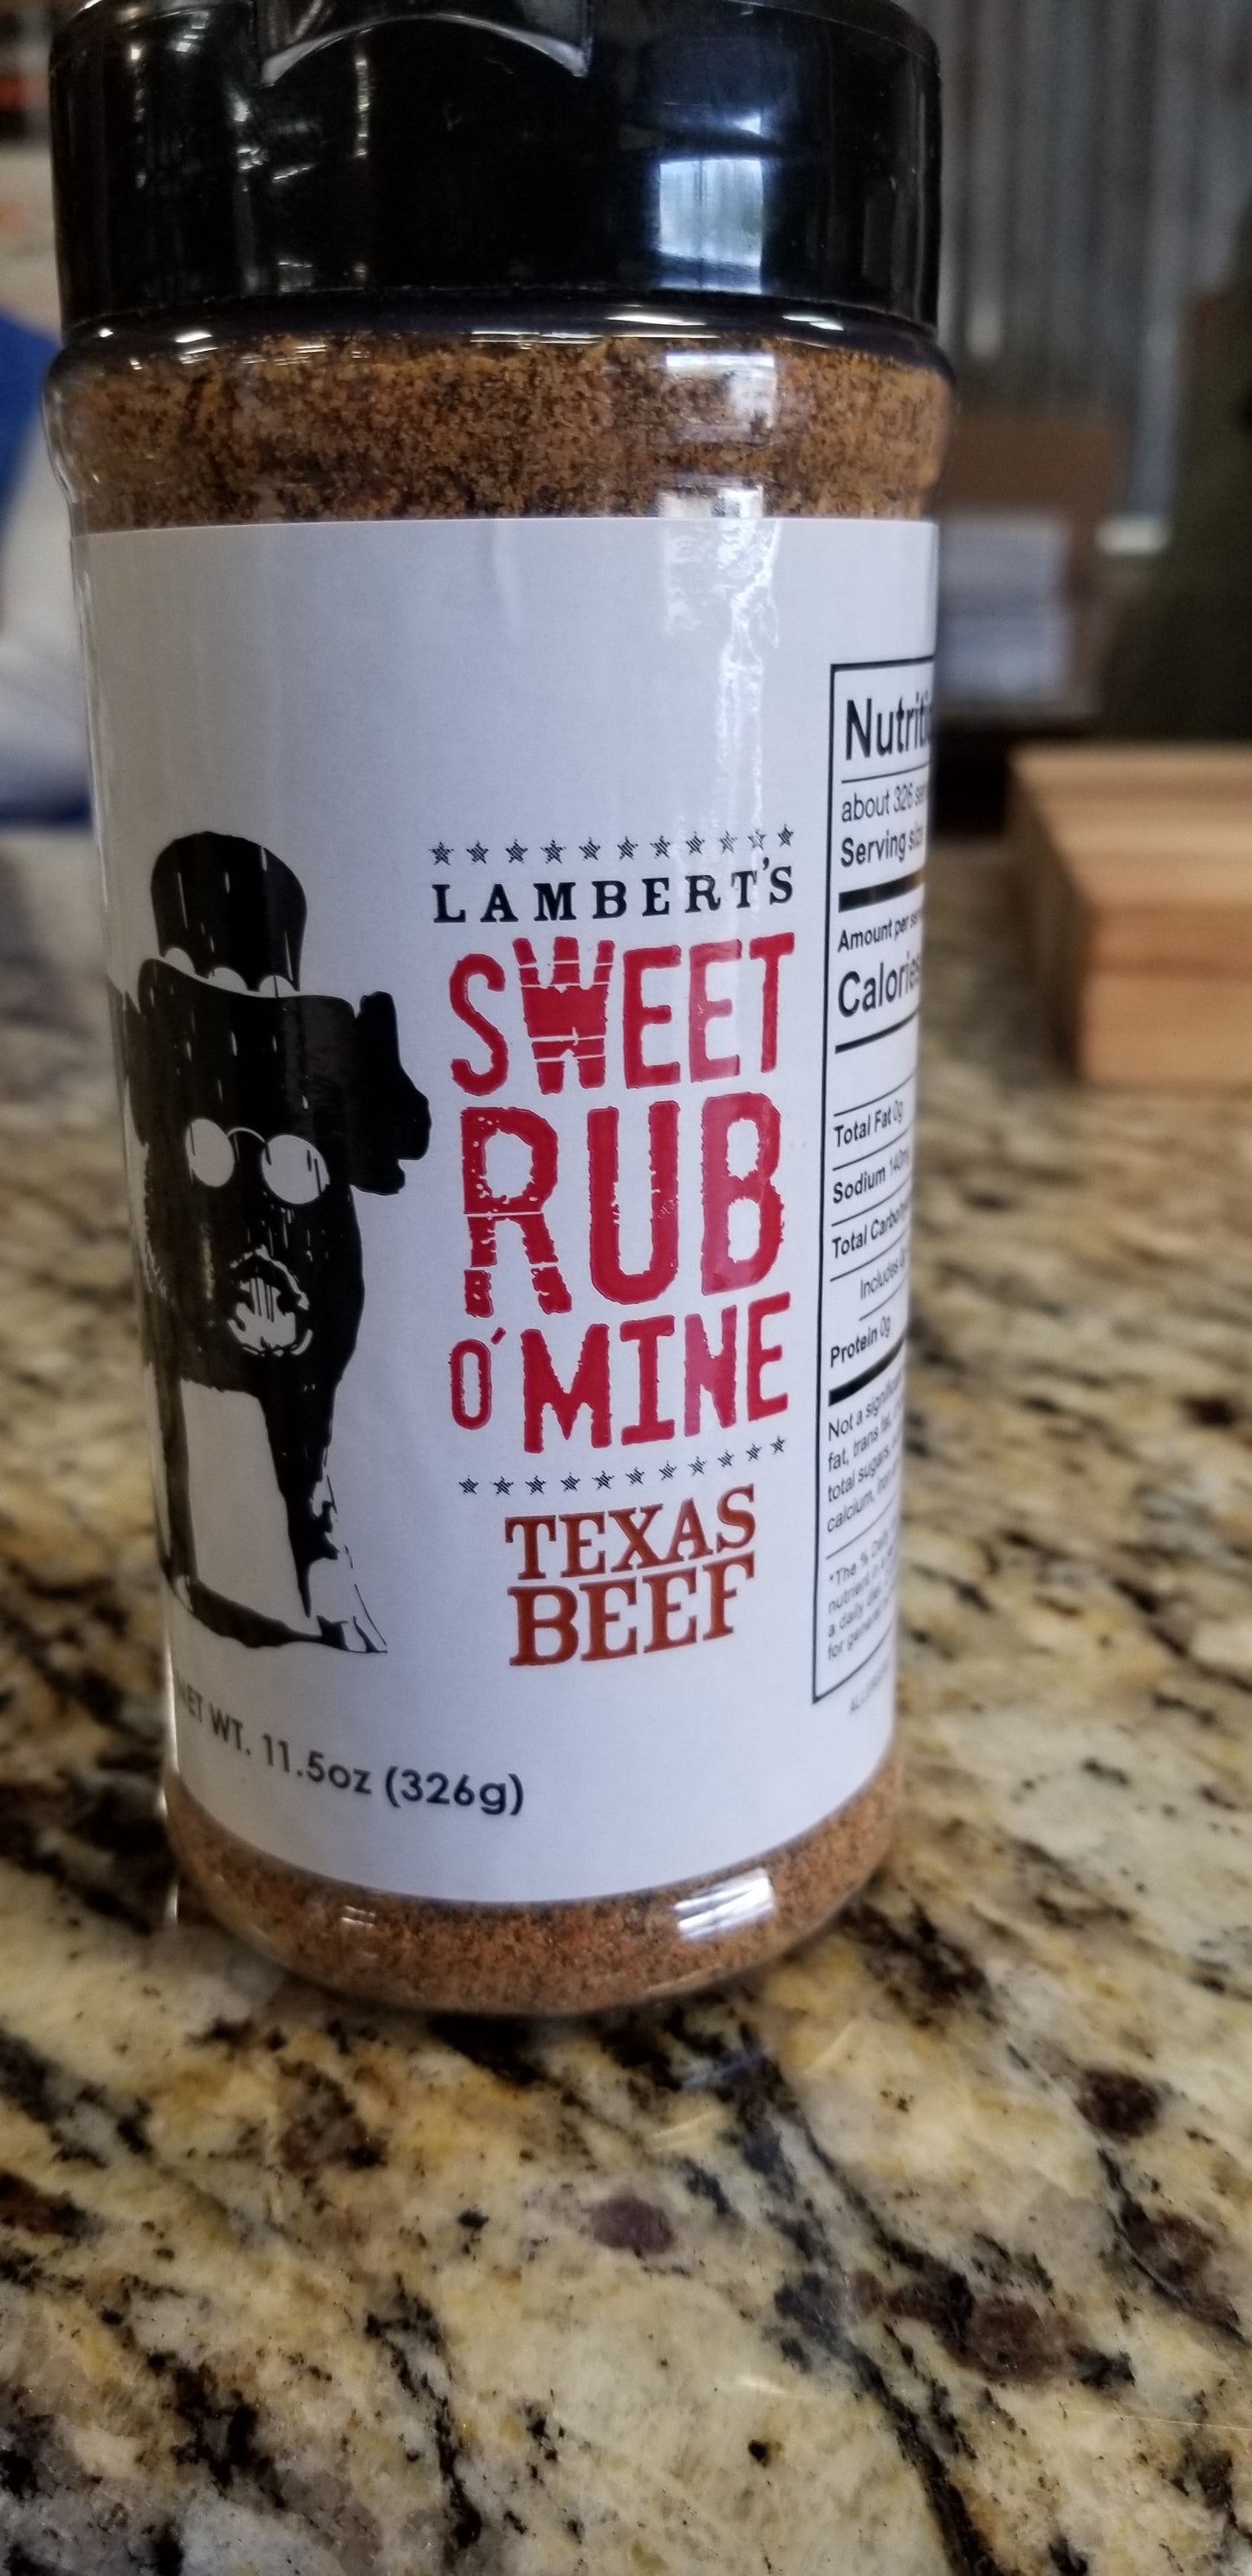 Sweet Rub O' Mine Texas Beef Rub